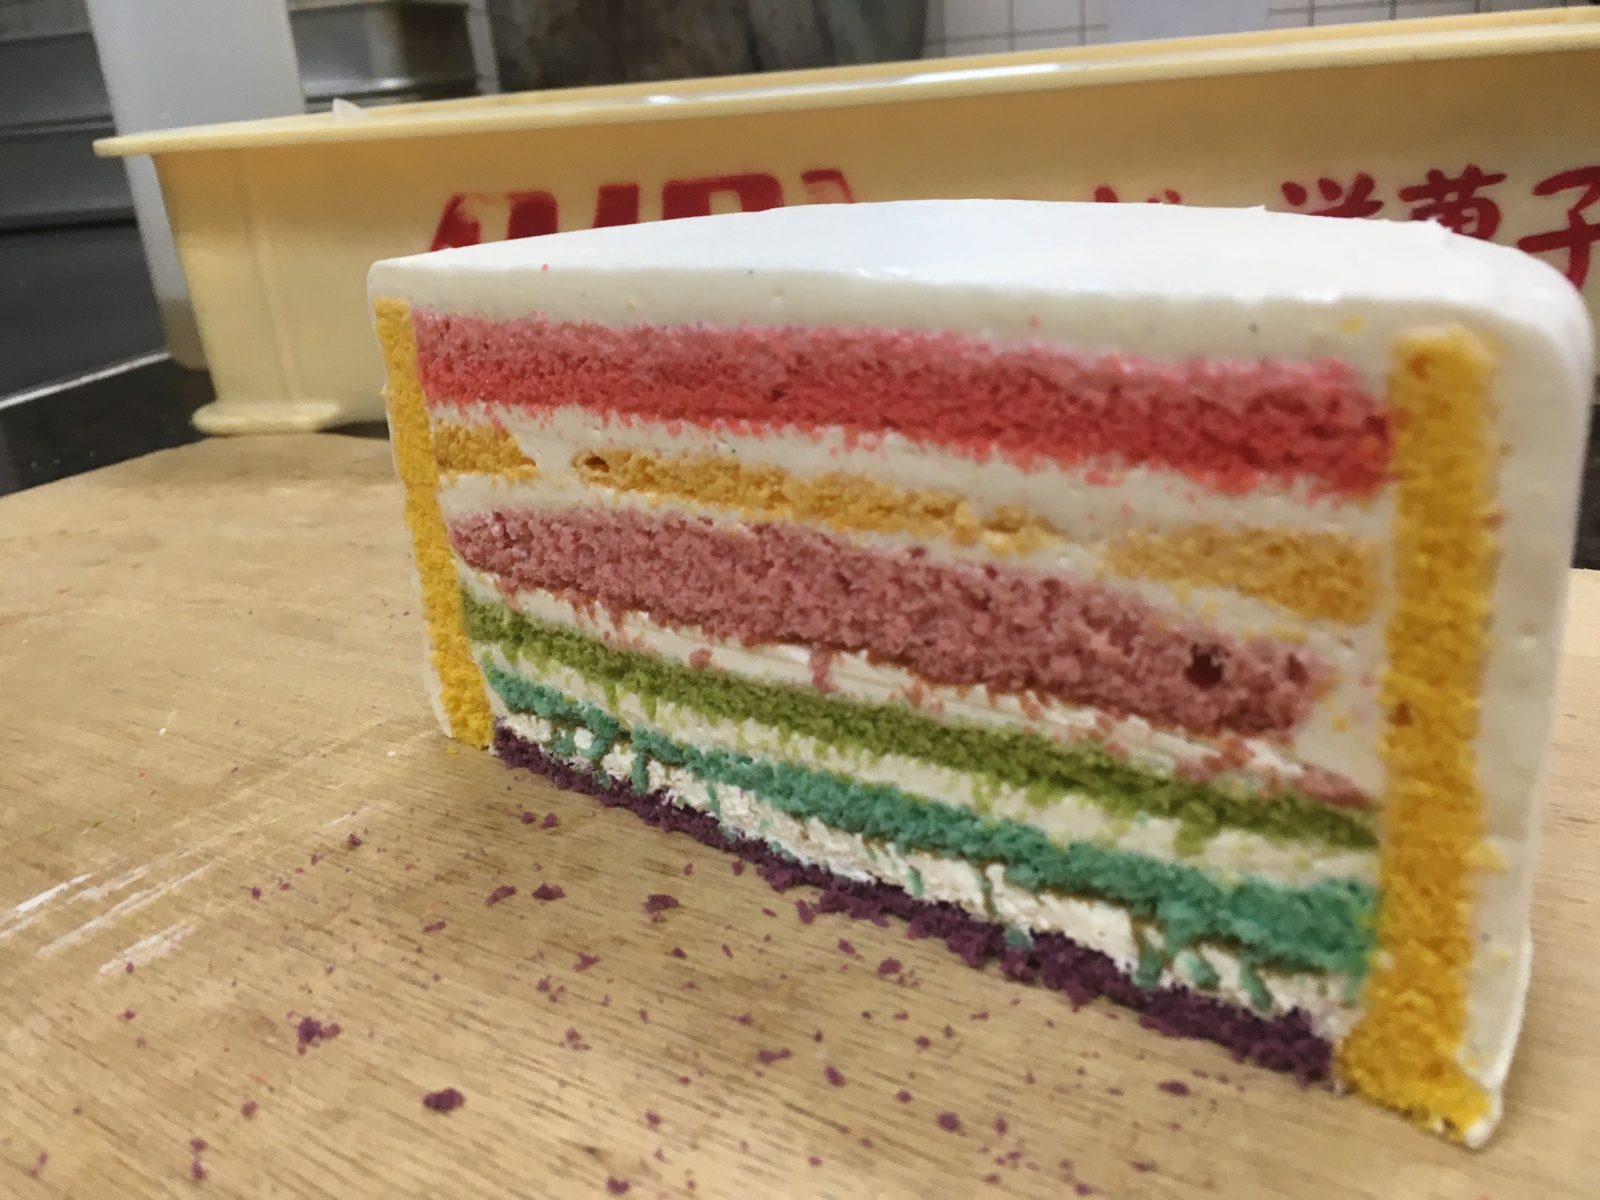 ６号サイズ 1８ｃｍ 虹色ケーキでスポンジが全て違う味です今回見た目にもインスタ映えするようにしました マンゴースポンジがサイドに張りつけてあります ラッピング無料 スペシャルレインボーケーキ6号サイズ 誕生日ケーキ お誕生日ケーキ バースデー ケーキ ホール